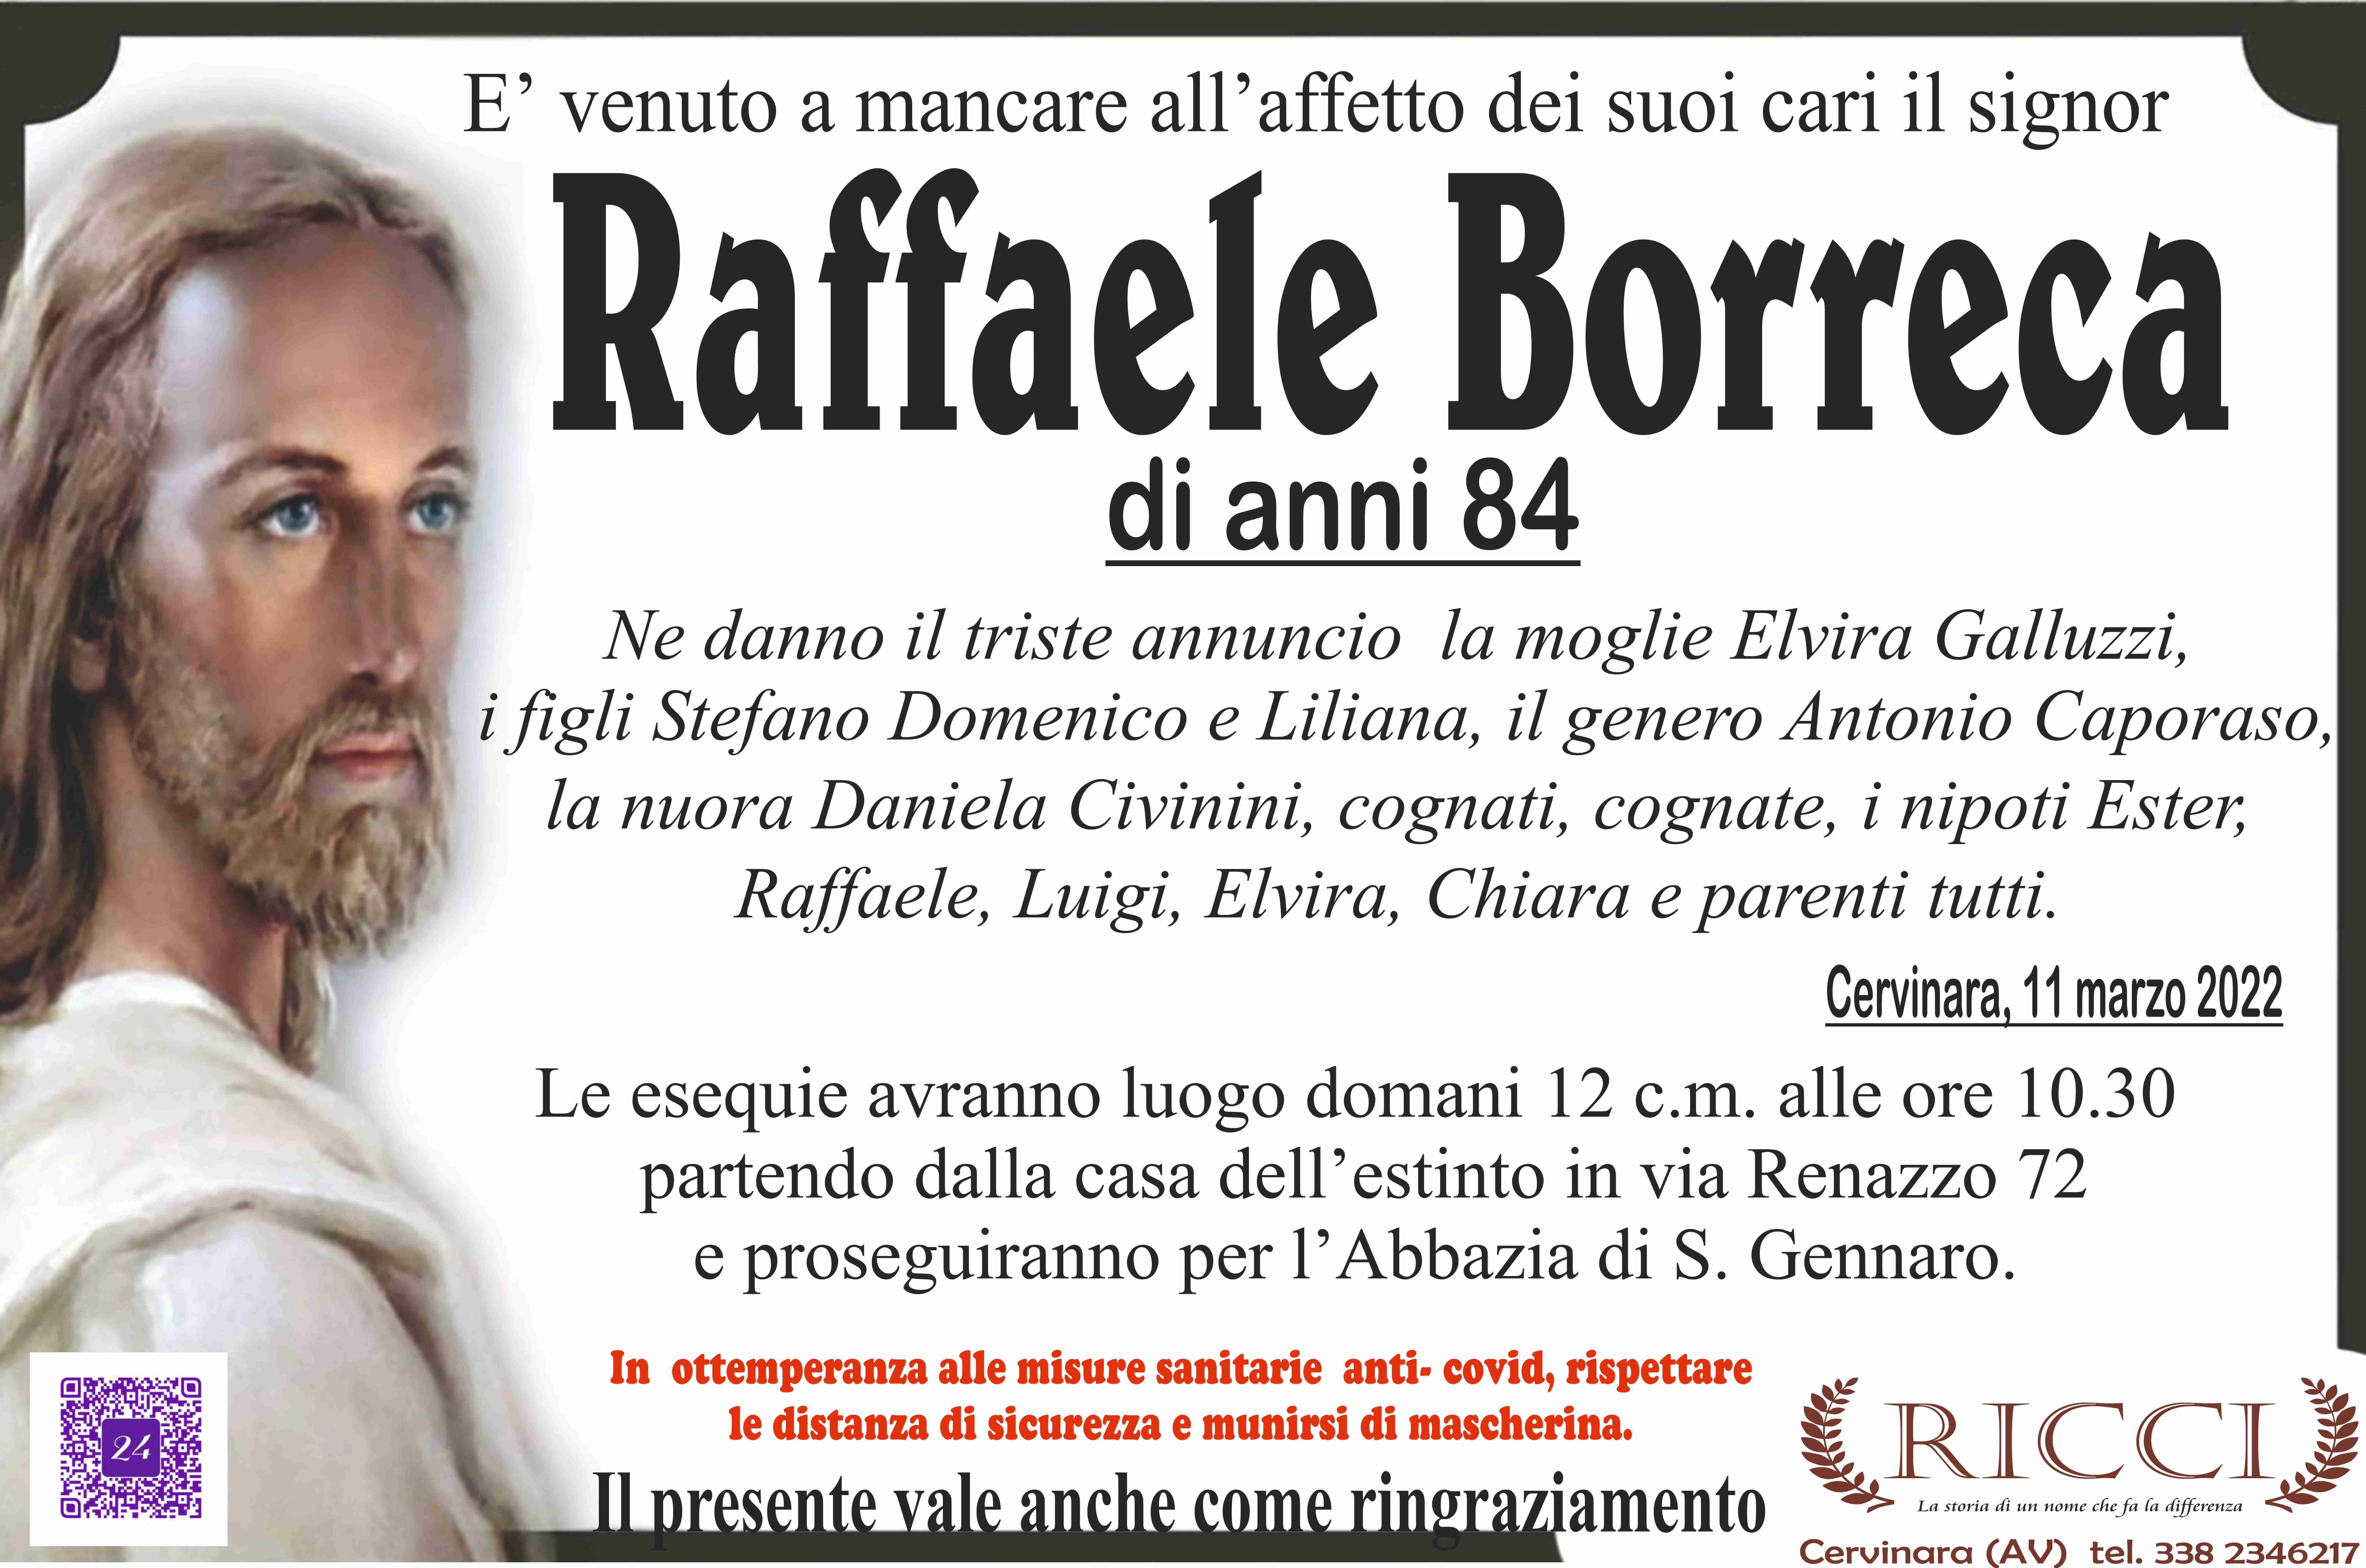 Raffaele Borreca